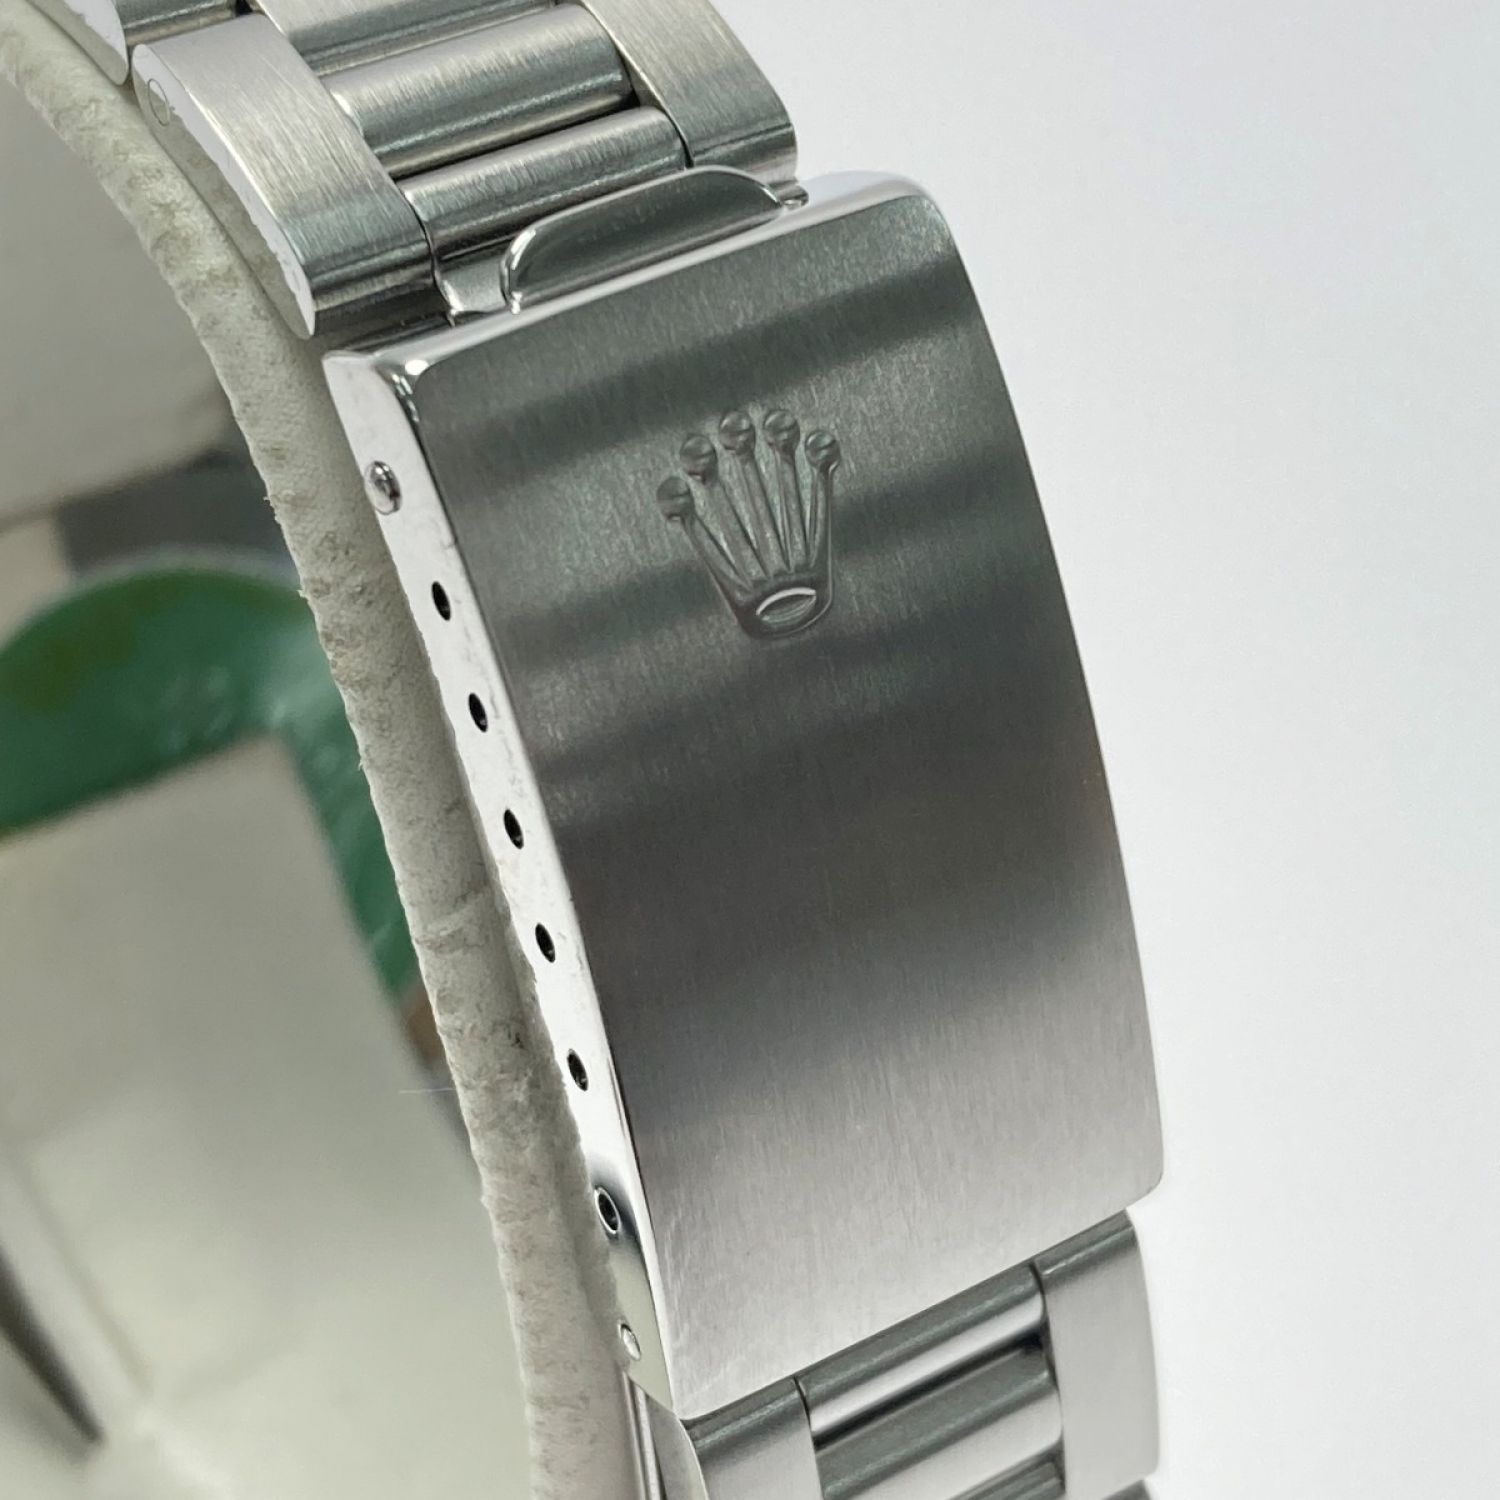 ロレックス ROLEX 14000 A番(1999年頃製造) ブラック メンズ 腕時計